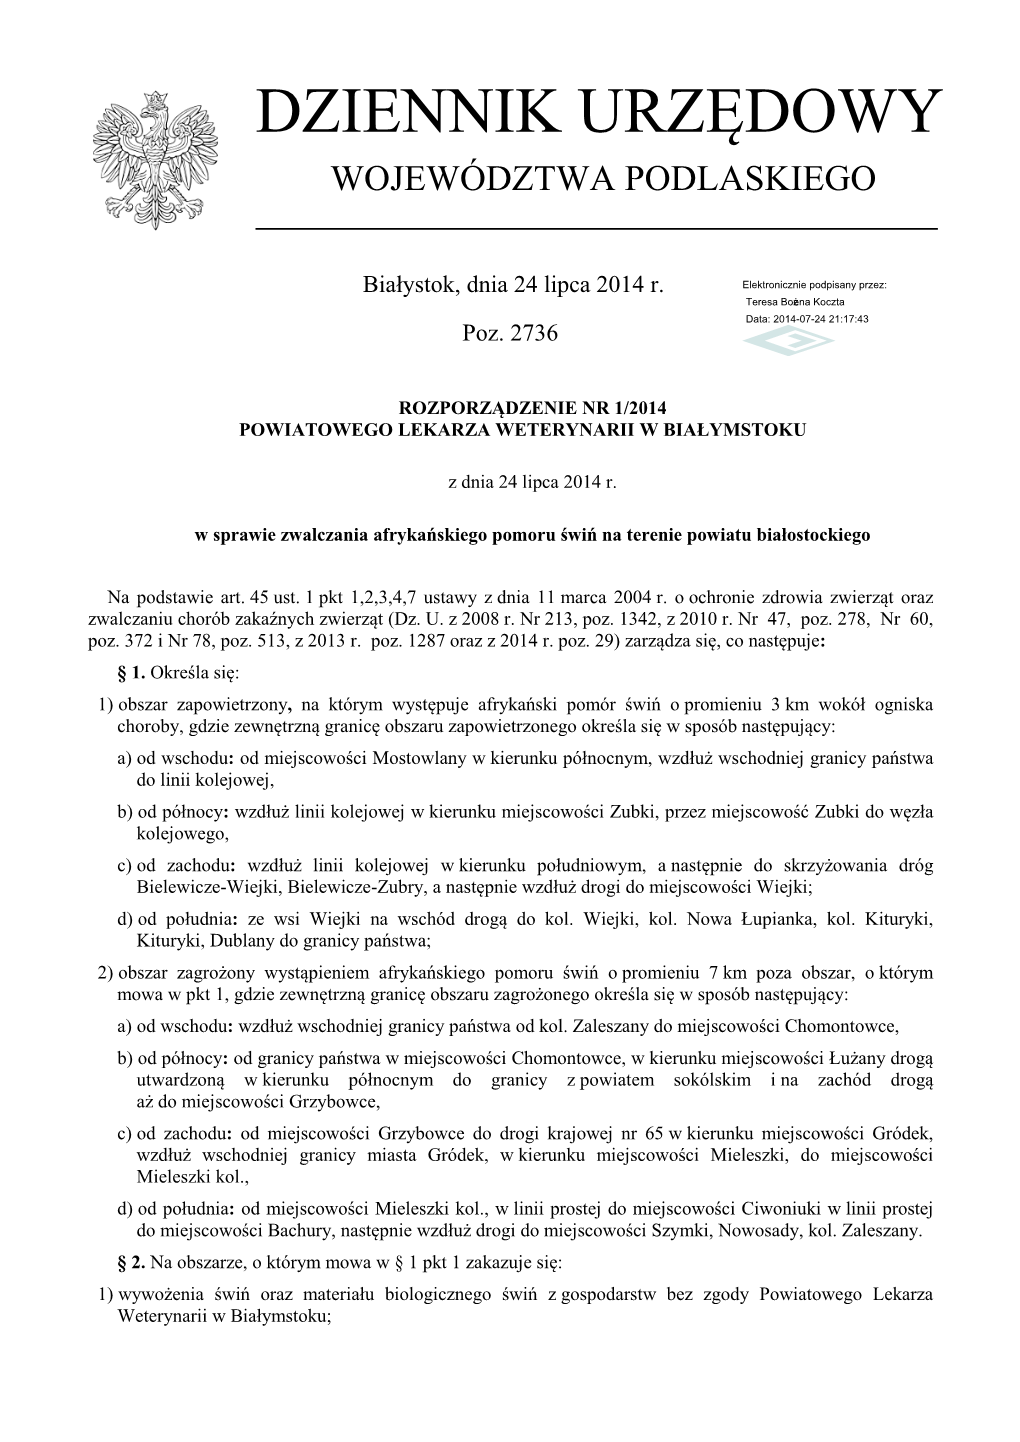 Rozporządzenie Nr 1/2014 Powiatowego Lekarza Weterynarii W Białymstoku